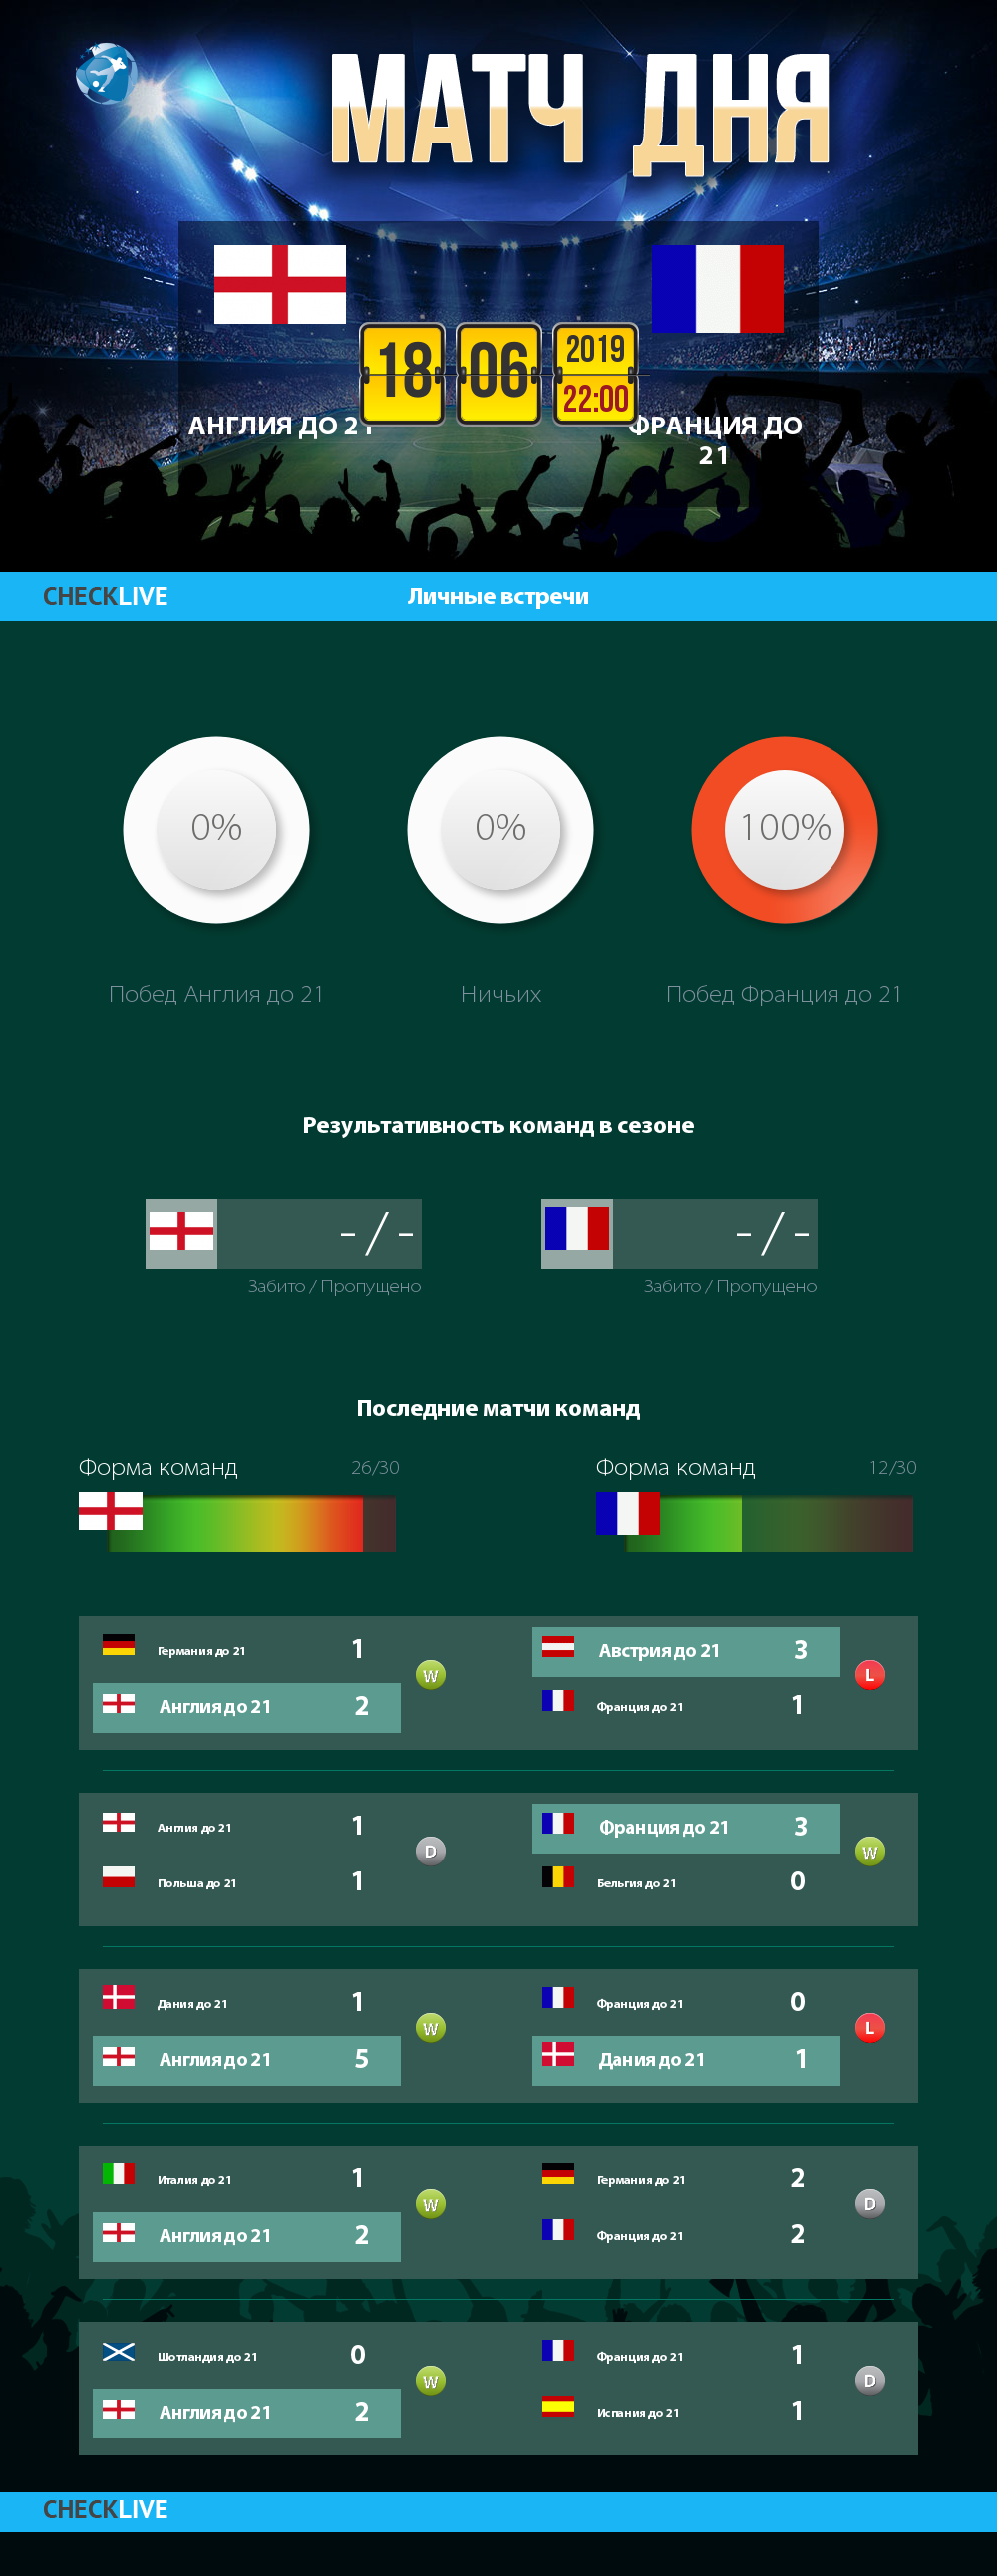 Инфографика Англия до 21 и Франция до 21 матч дня 18.06.2019